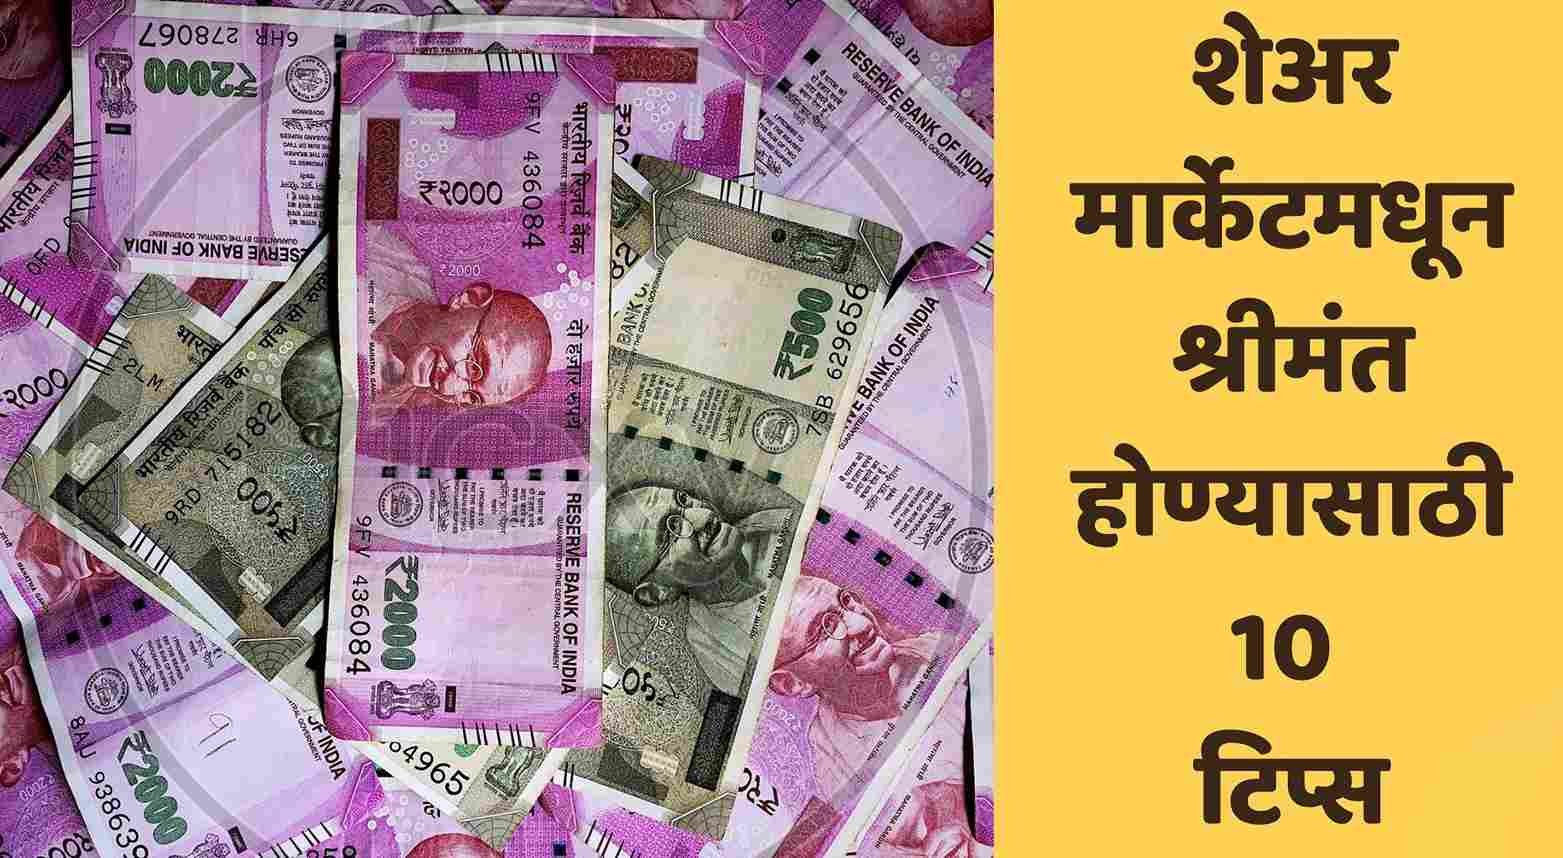 शेअर मार्केटमधून श्रीमंत होण्यासाठी 10 टिप्स | How To Become Rich From Share Market In Marathi